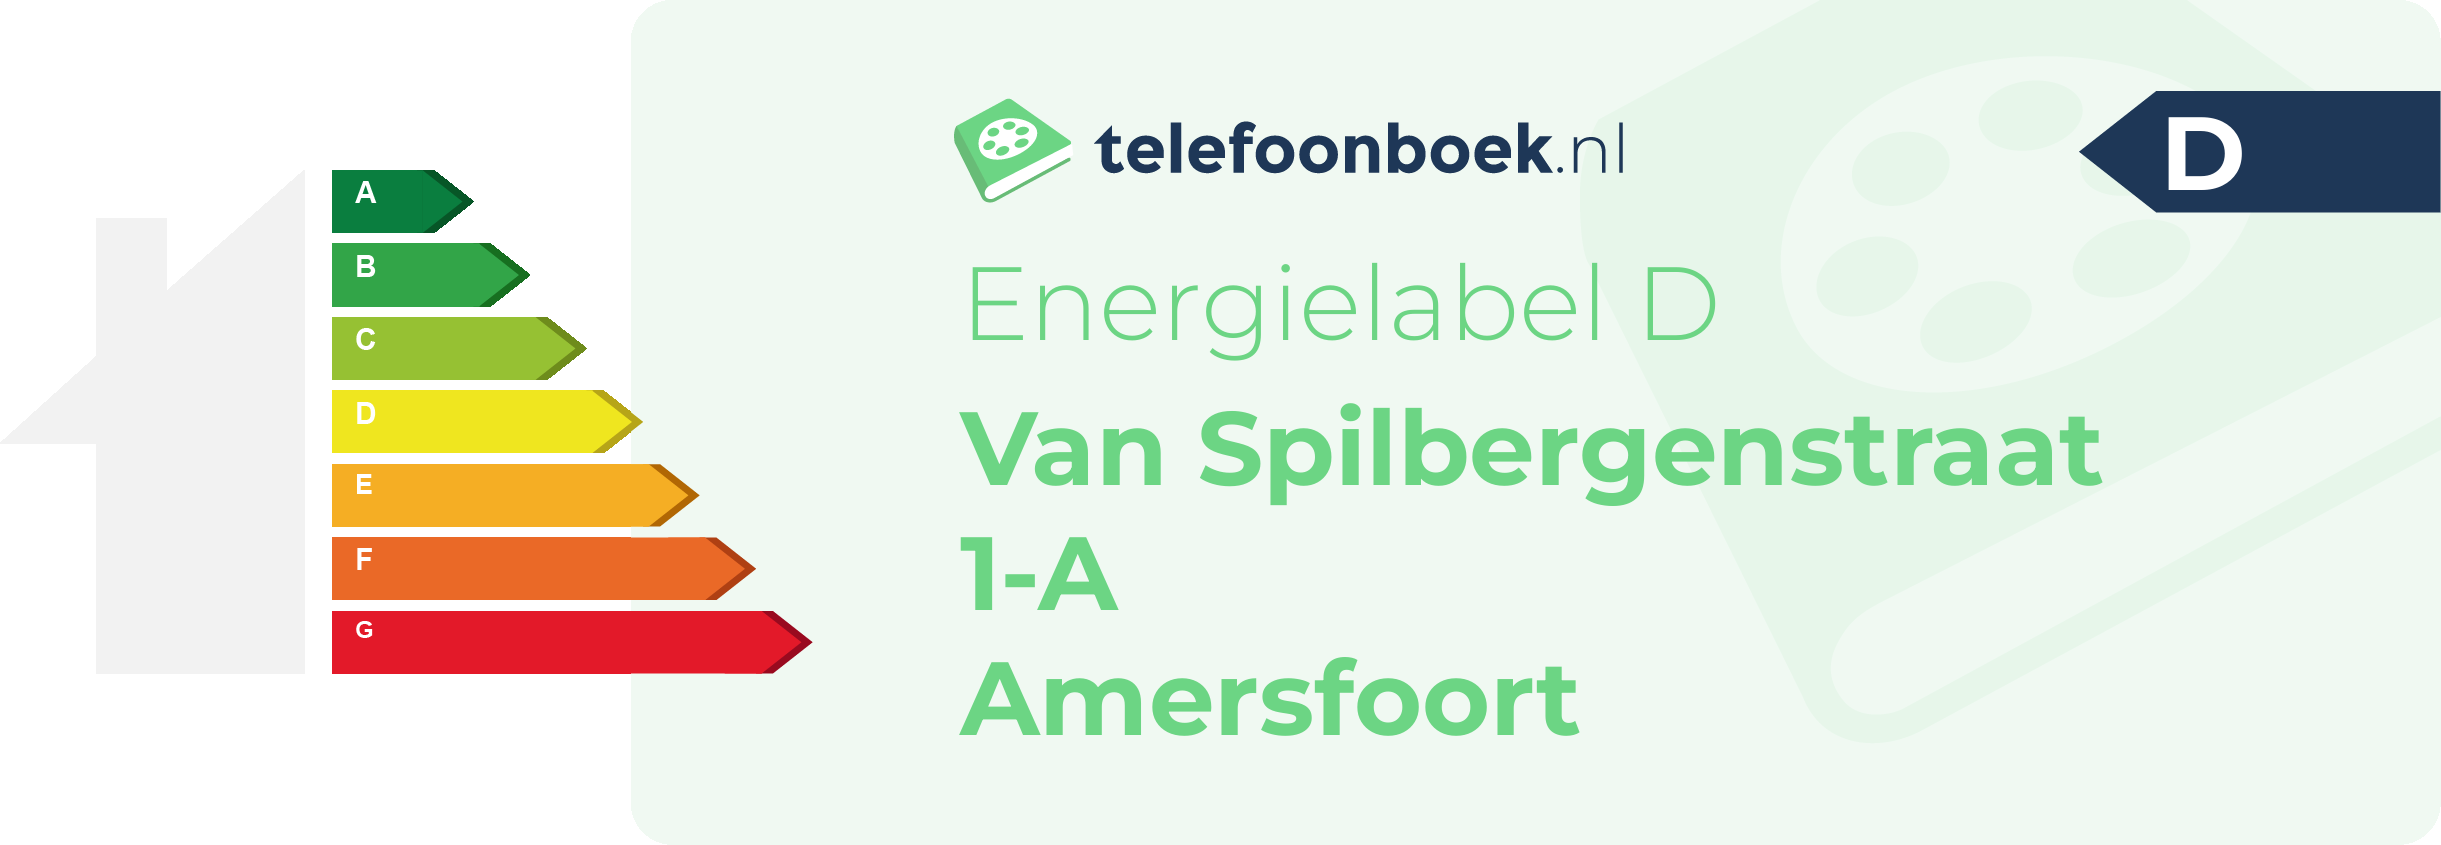 Energielabel Van Spilbergenstraat 1-A Amersfoort